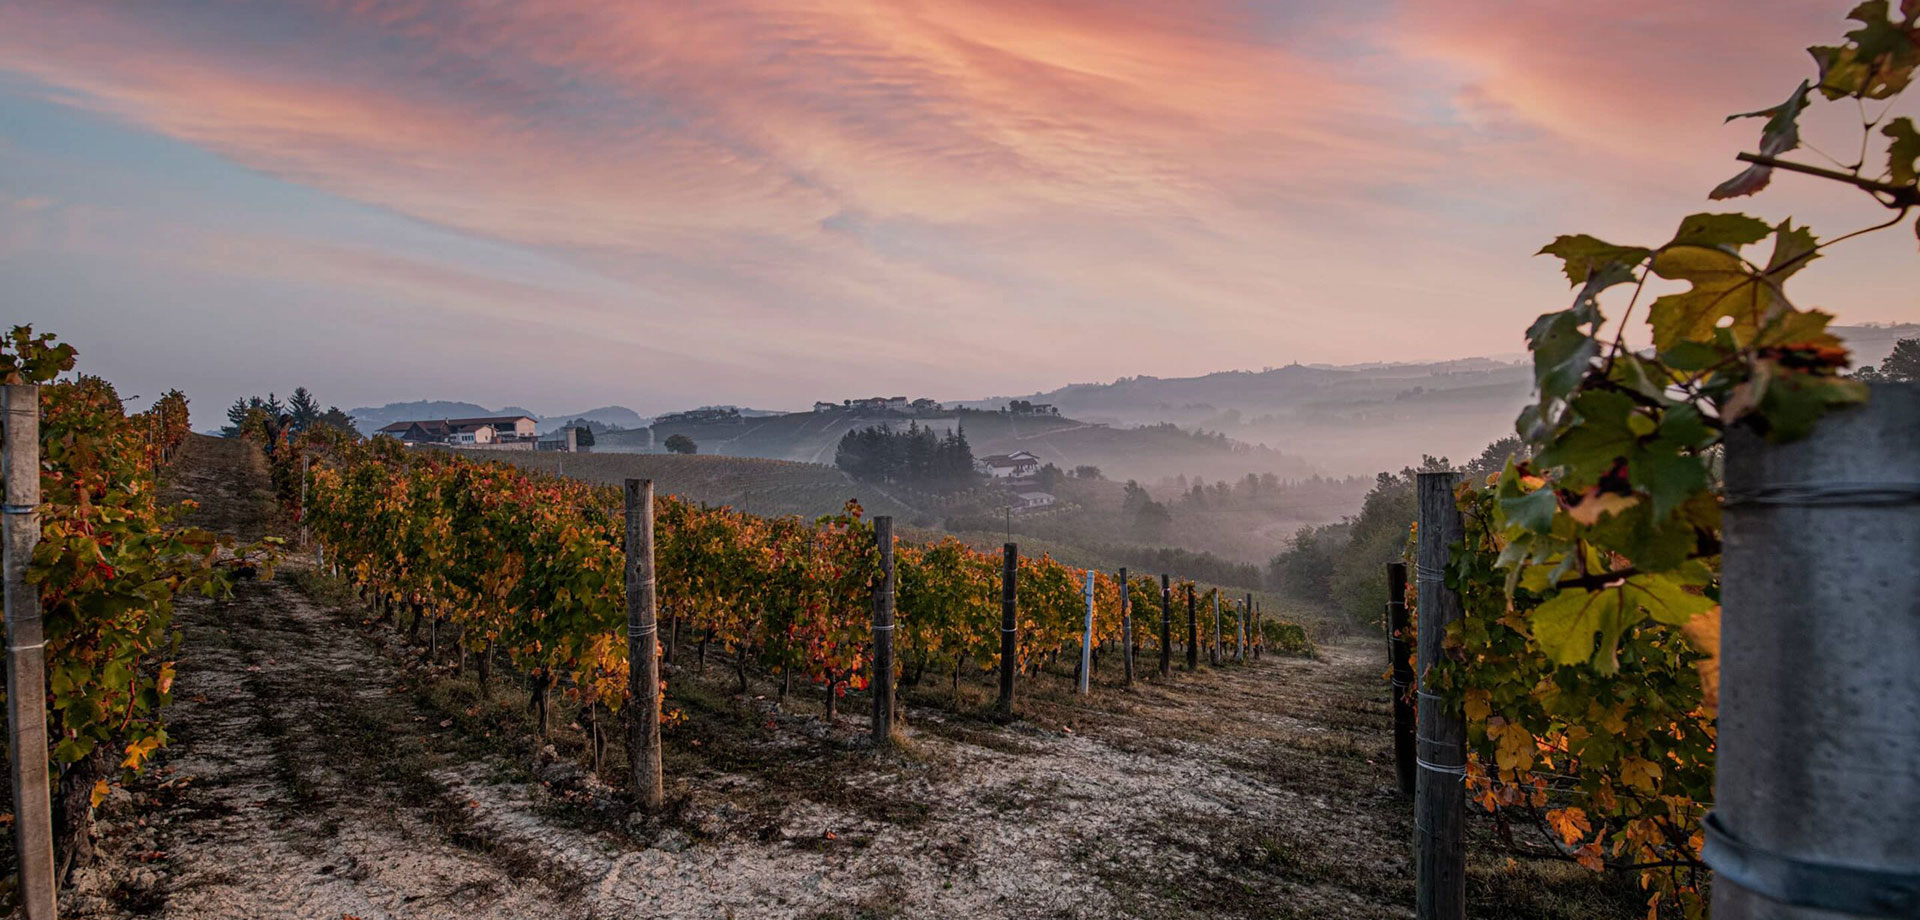 PECCHENINO葡萄酒庄园的历史可以追溯到1700年代末